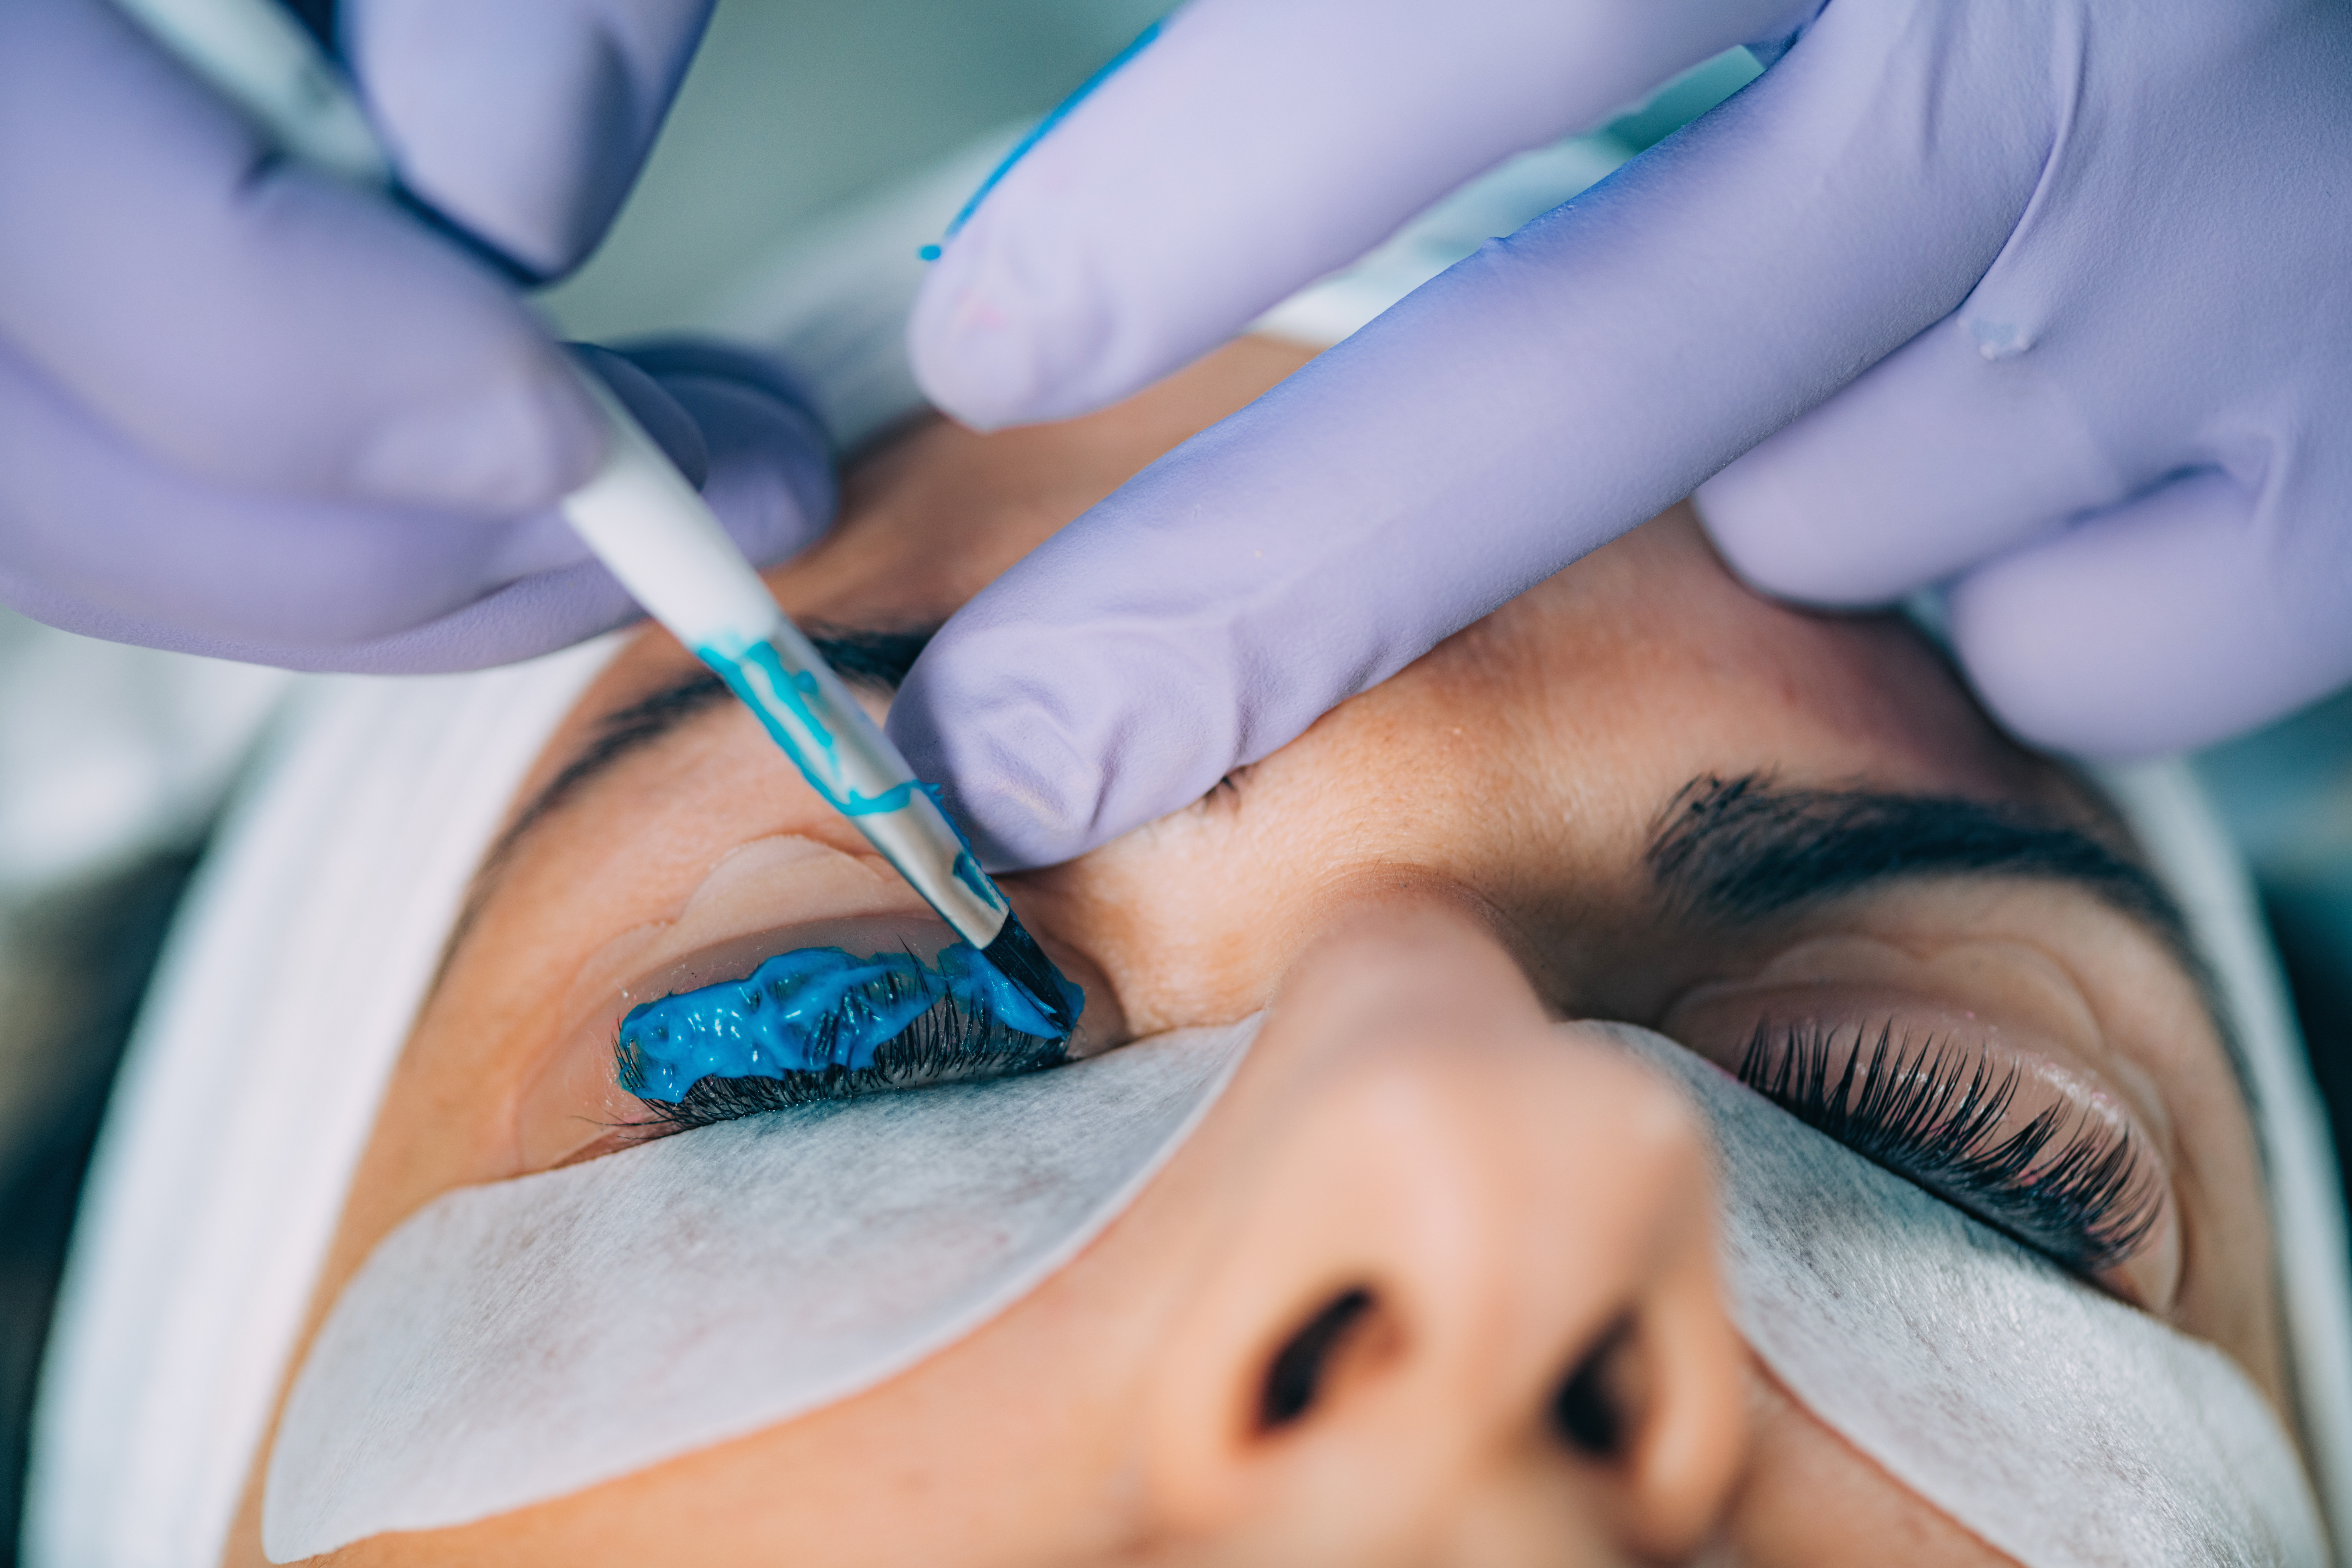 Cosmetologist Puts BluePaint on the Eyelashes During Lash Lifting Procedure. Laminating Eyelashes.